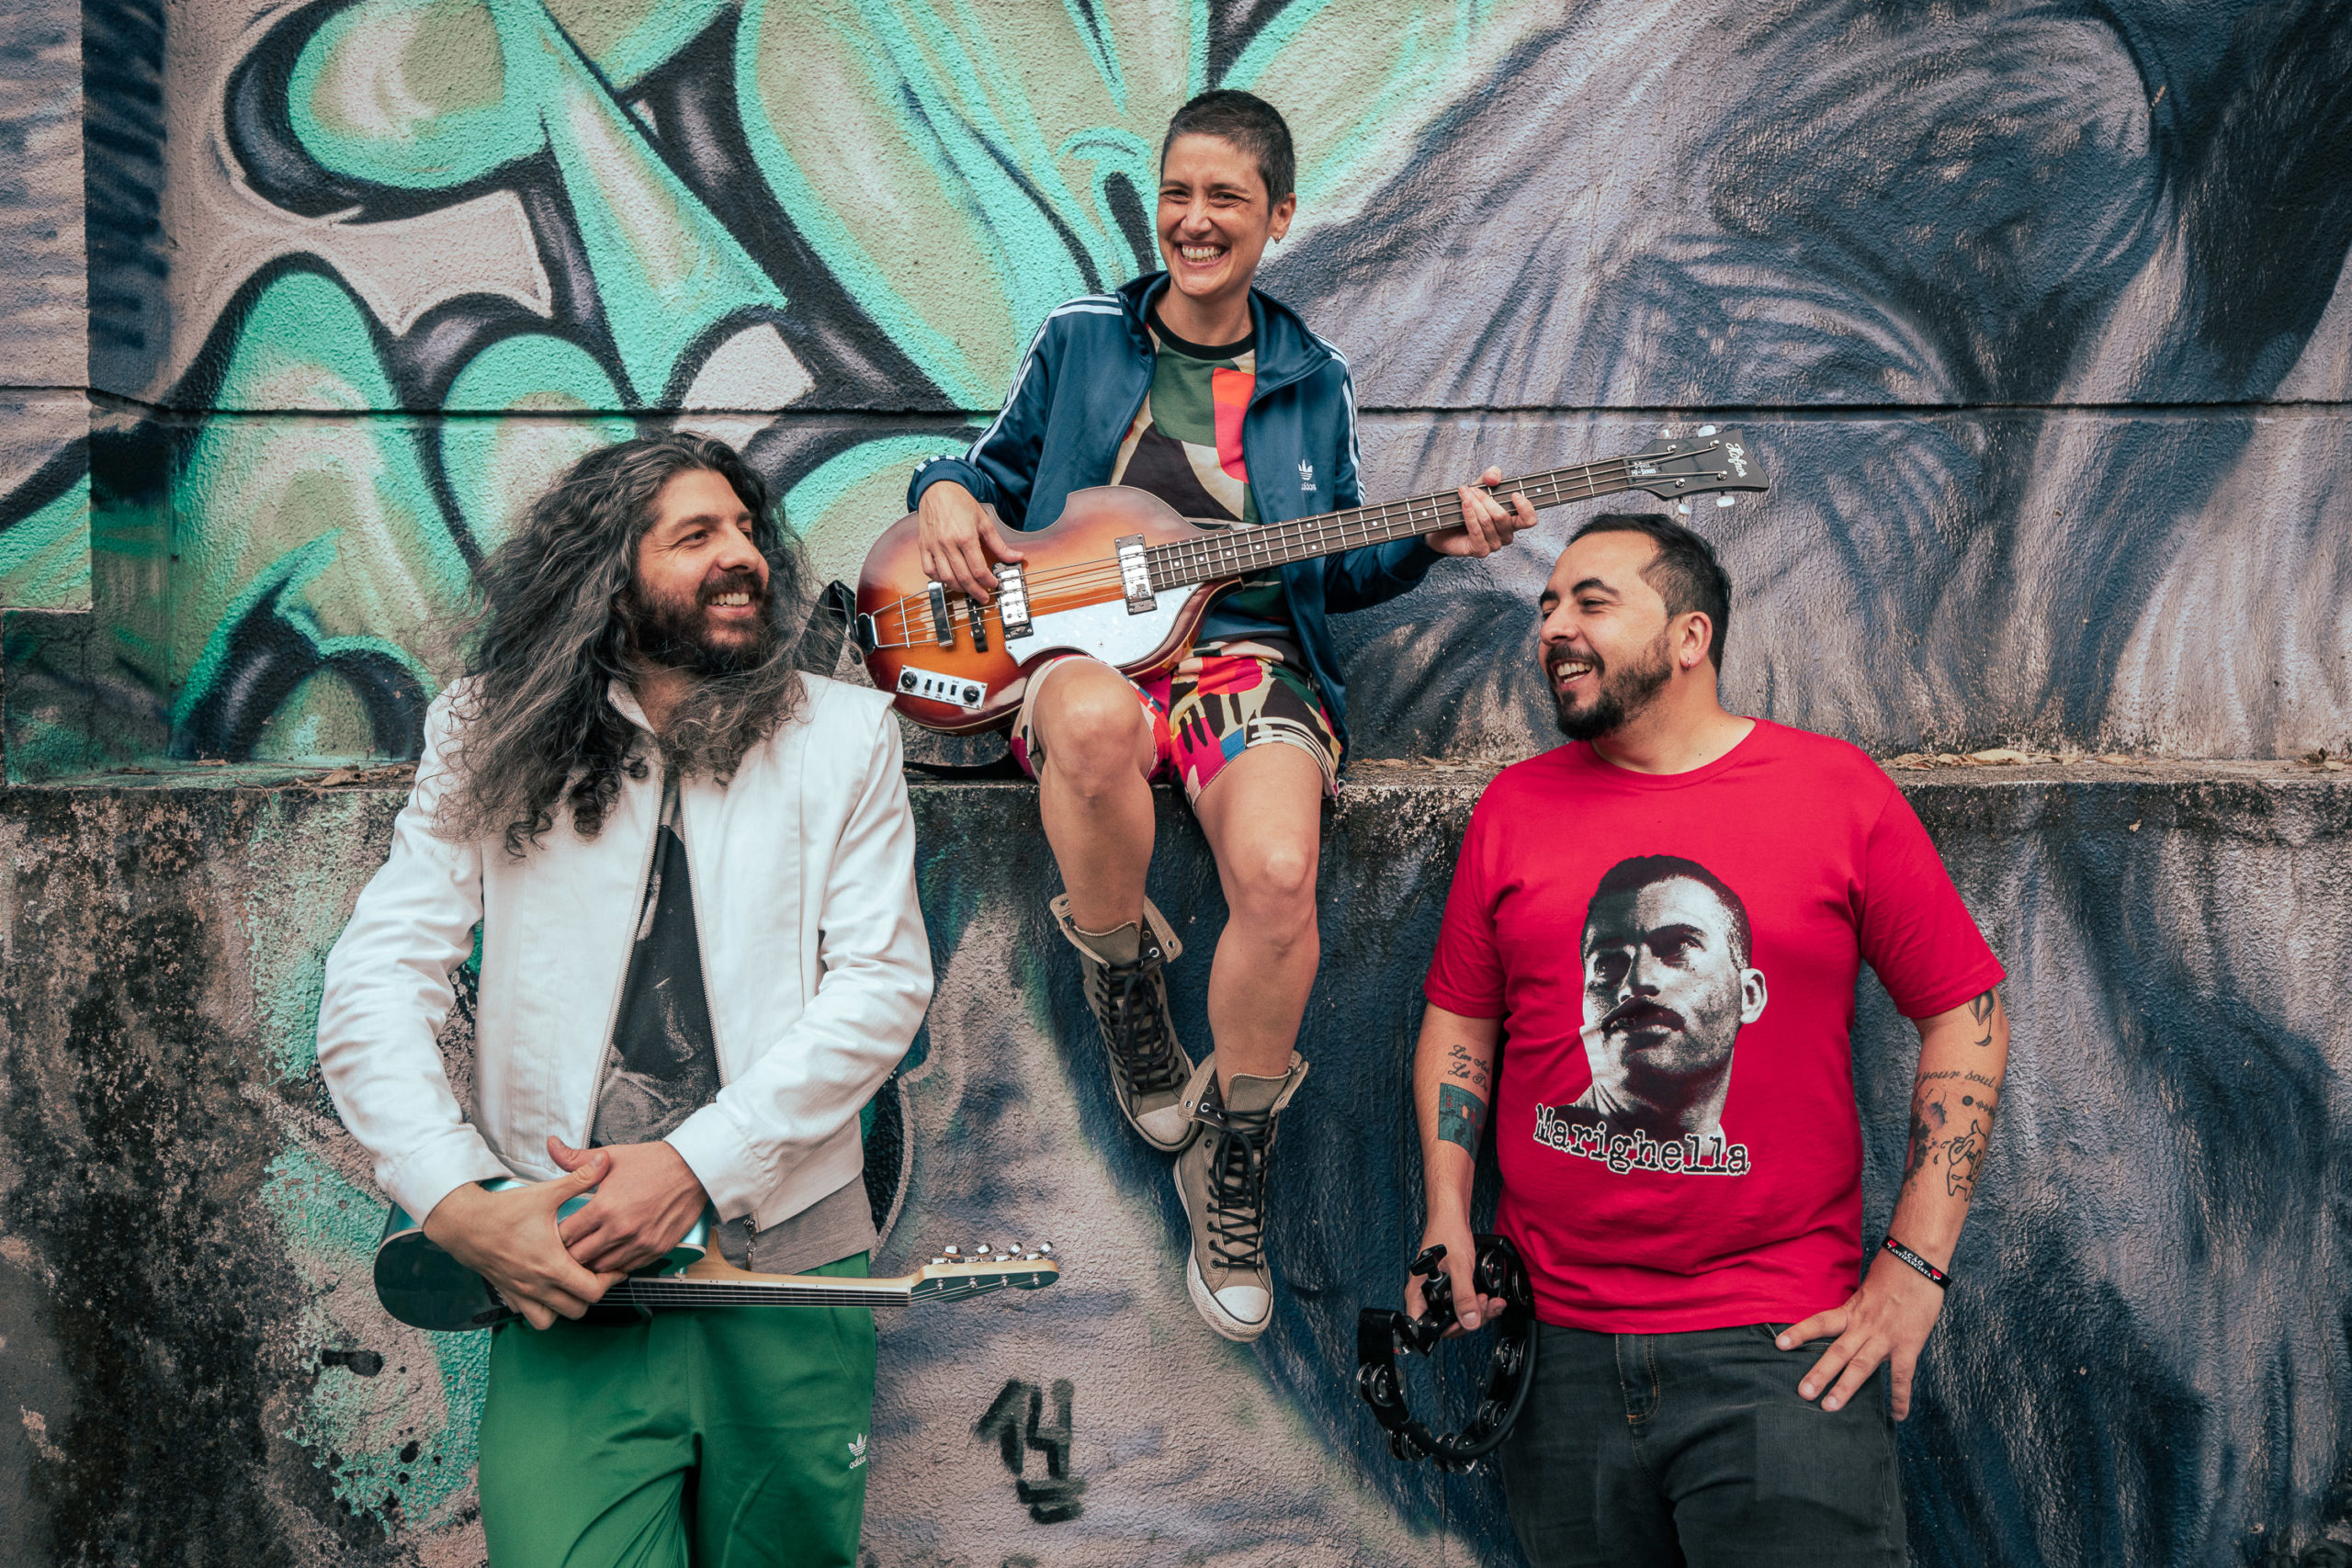 Medicos Cubanos: conheça Meu próprio clube da Luta, disco de estreia da banda